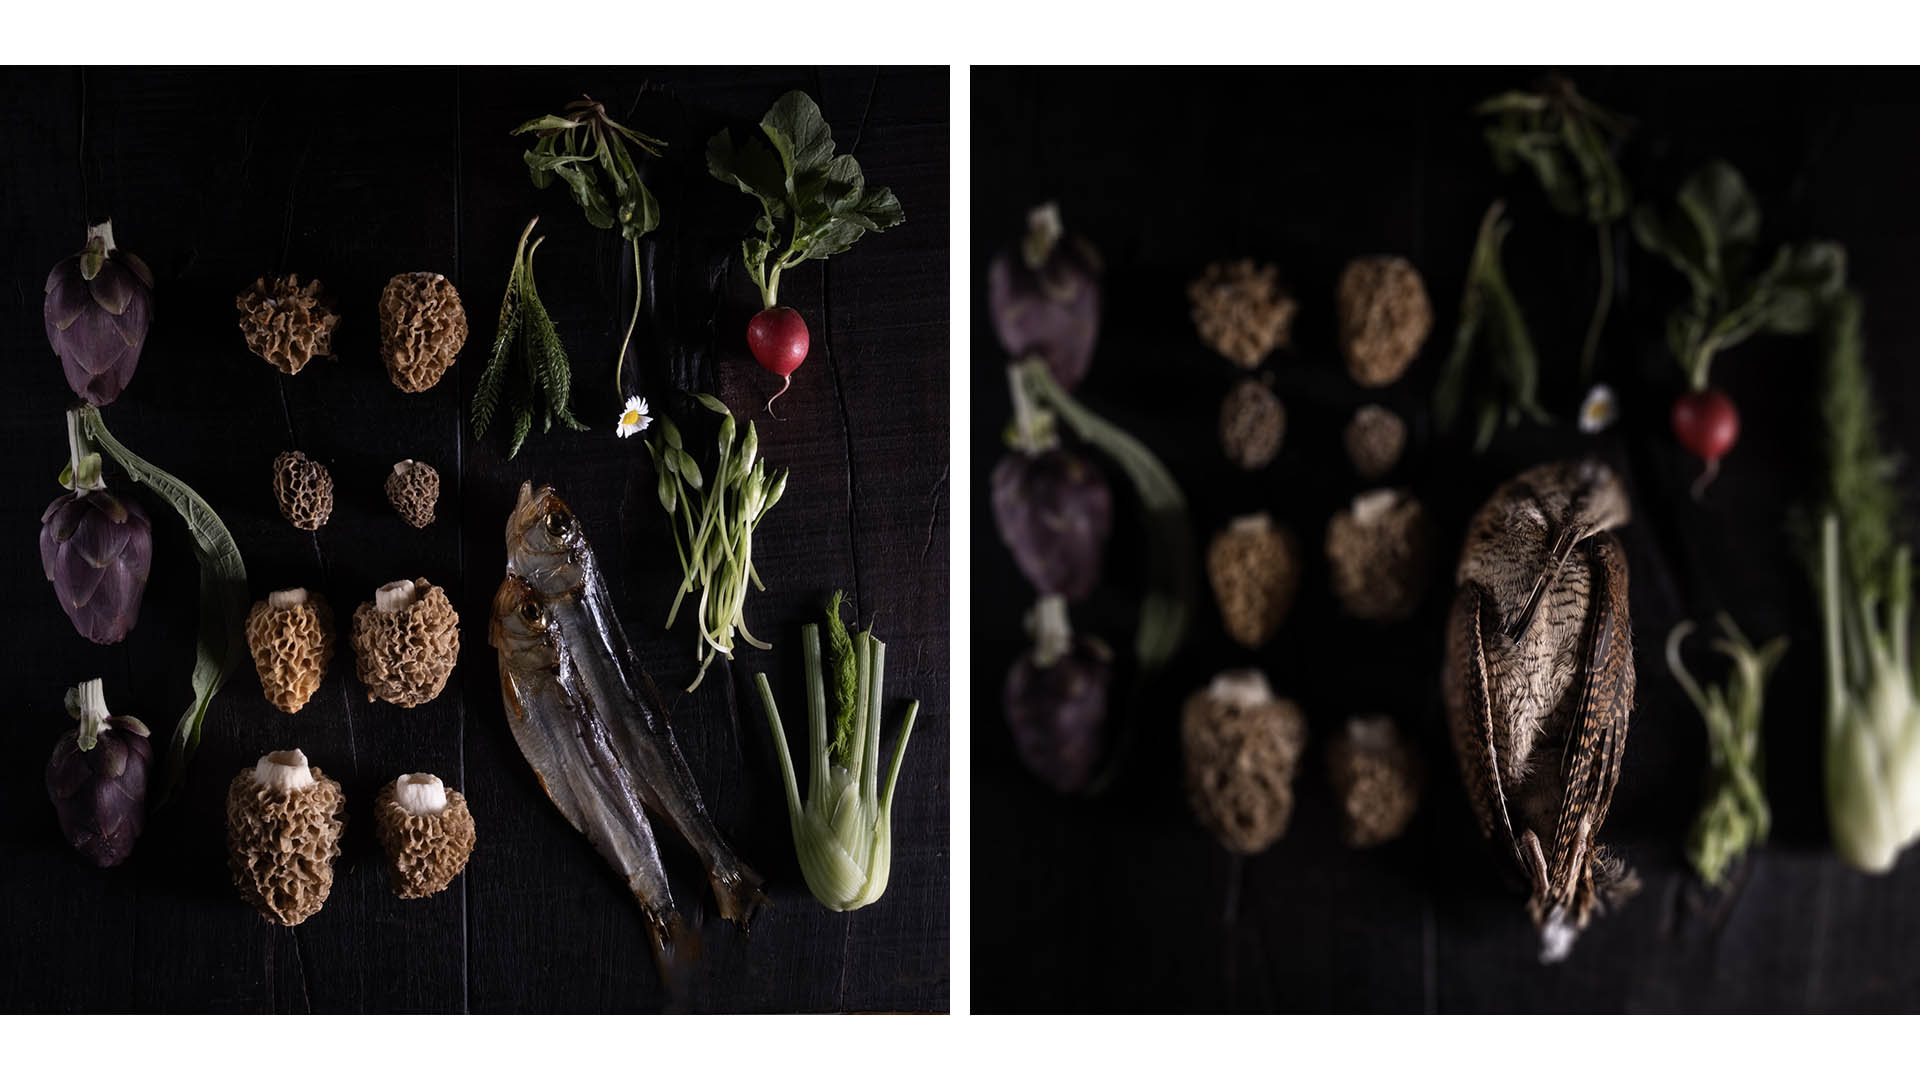 L'offerta gastronomica di Matteo Vergine, cuoco di Grow Restaurant, riguarda le carni cos come le altre proposte del bosco: funghi, bacche e fiori edibili